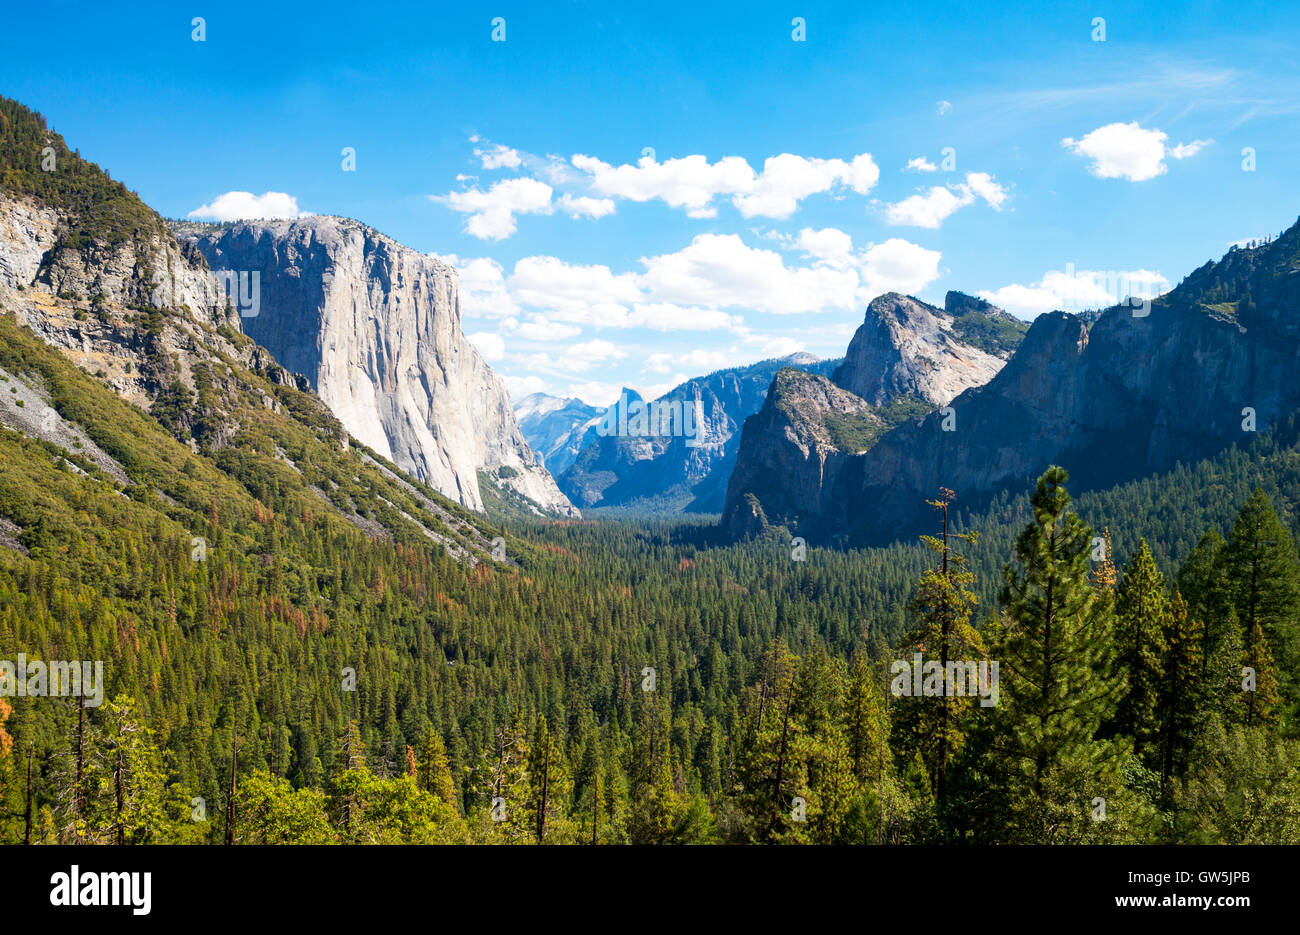 Yosemite National Park, Californie, vue panoramique de la vallée avec le El Capitan et la cathédrale Spires montagne Banque D'Images